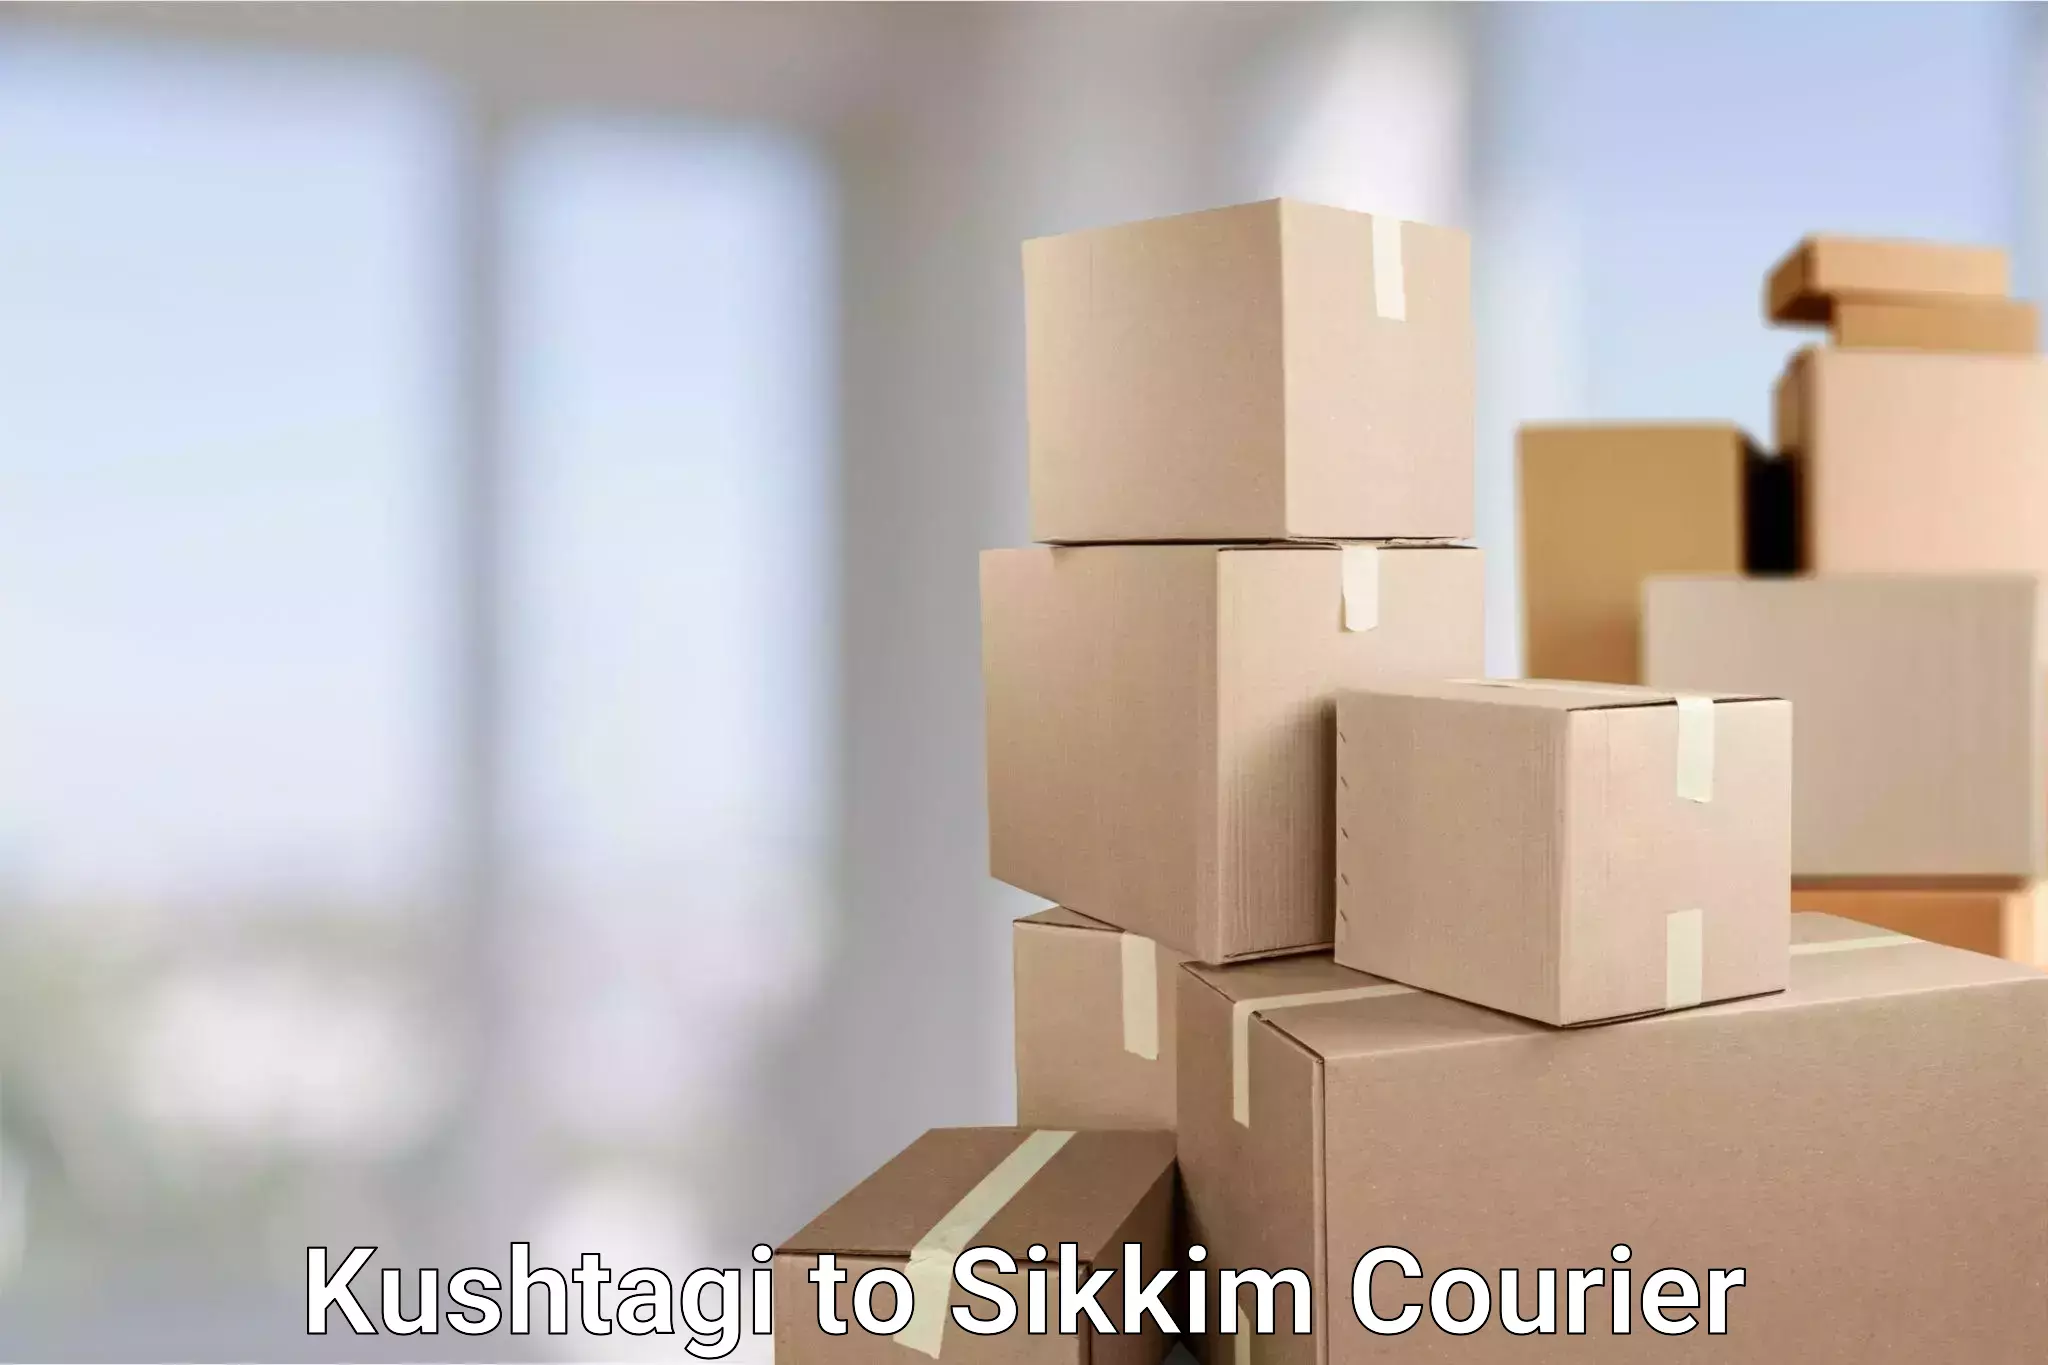 Global logistics network Kushtagi to West Sikkim